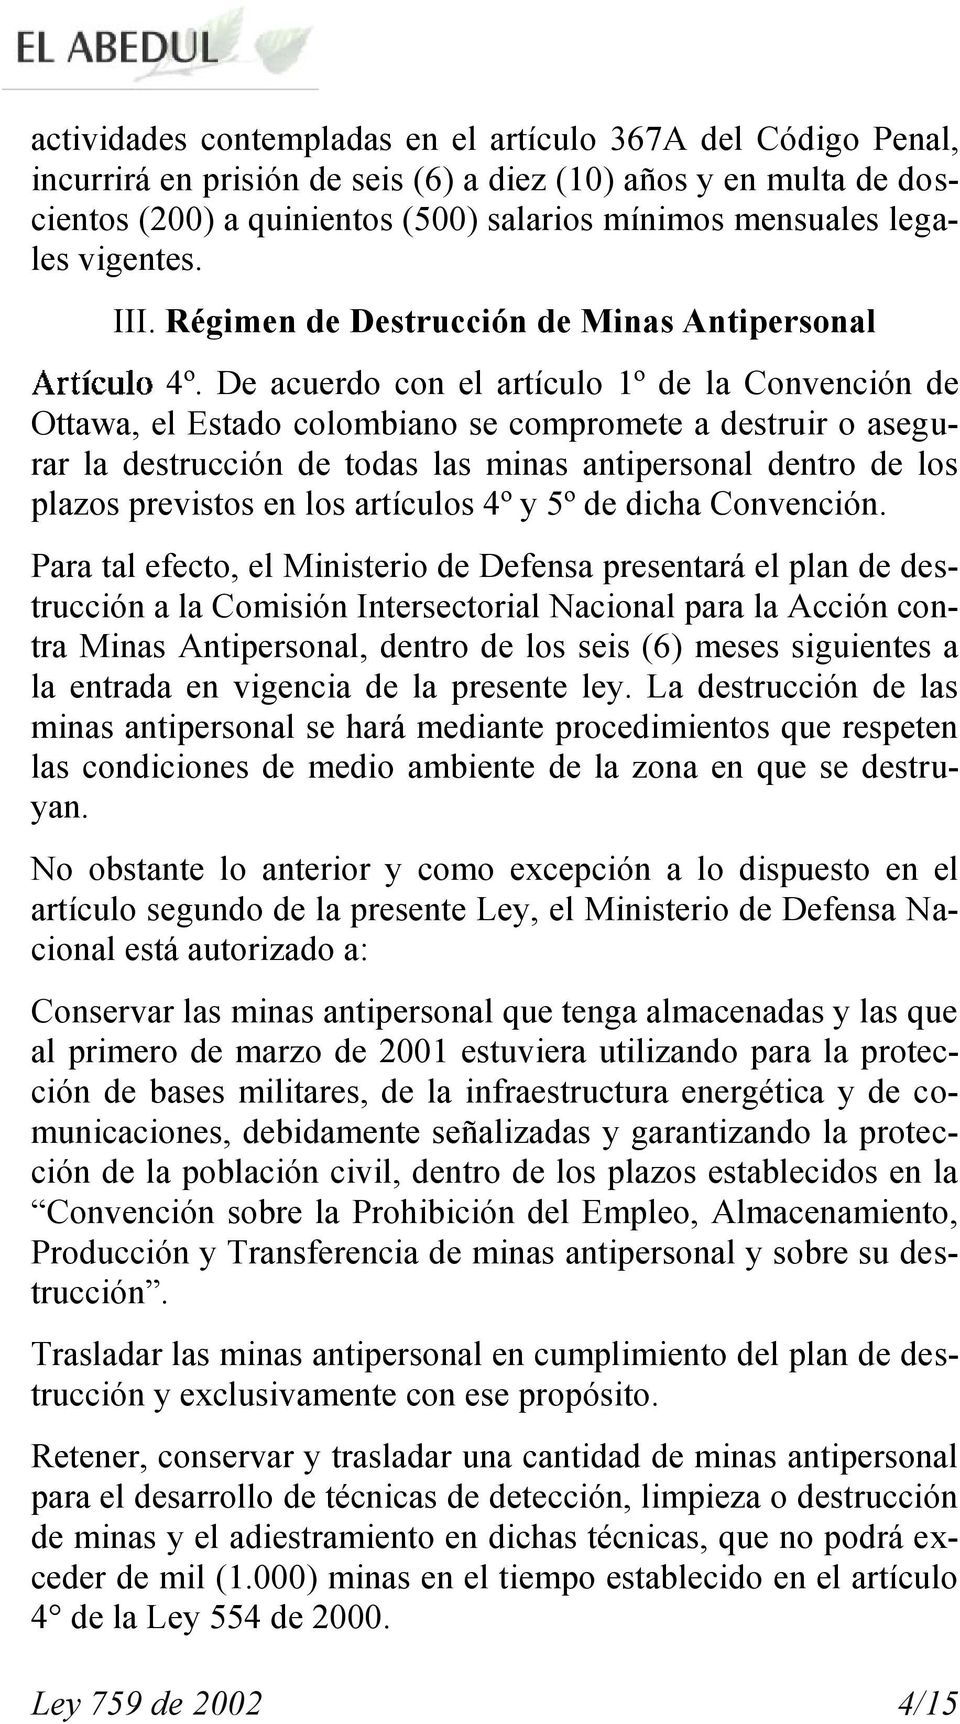 De acuerdo con el artículo 1º de la Convención de Ottawa, el Estado colombiano se compromete a destruir o asegurar la destrucción de todas las minas antipersonal dentro de los plazos previstos en los